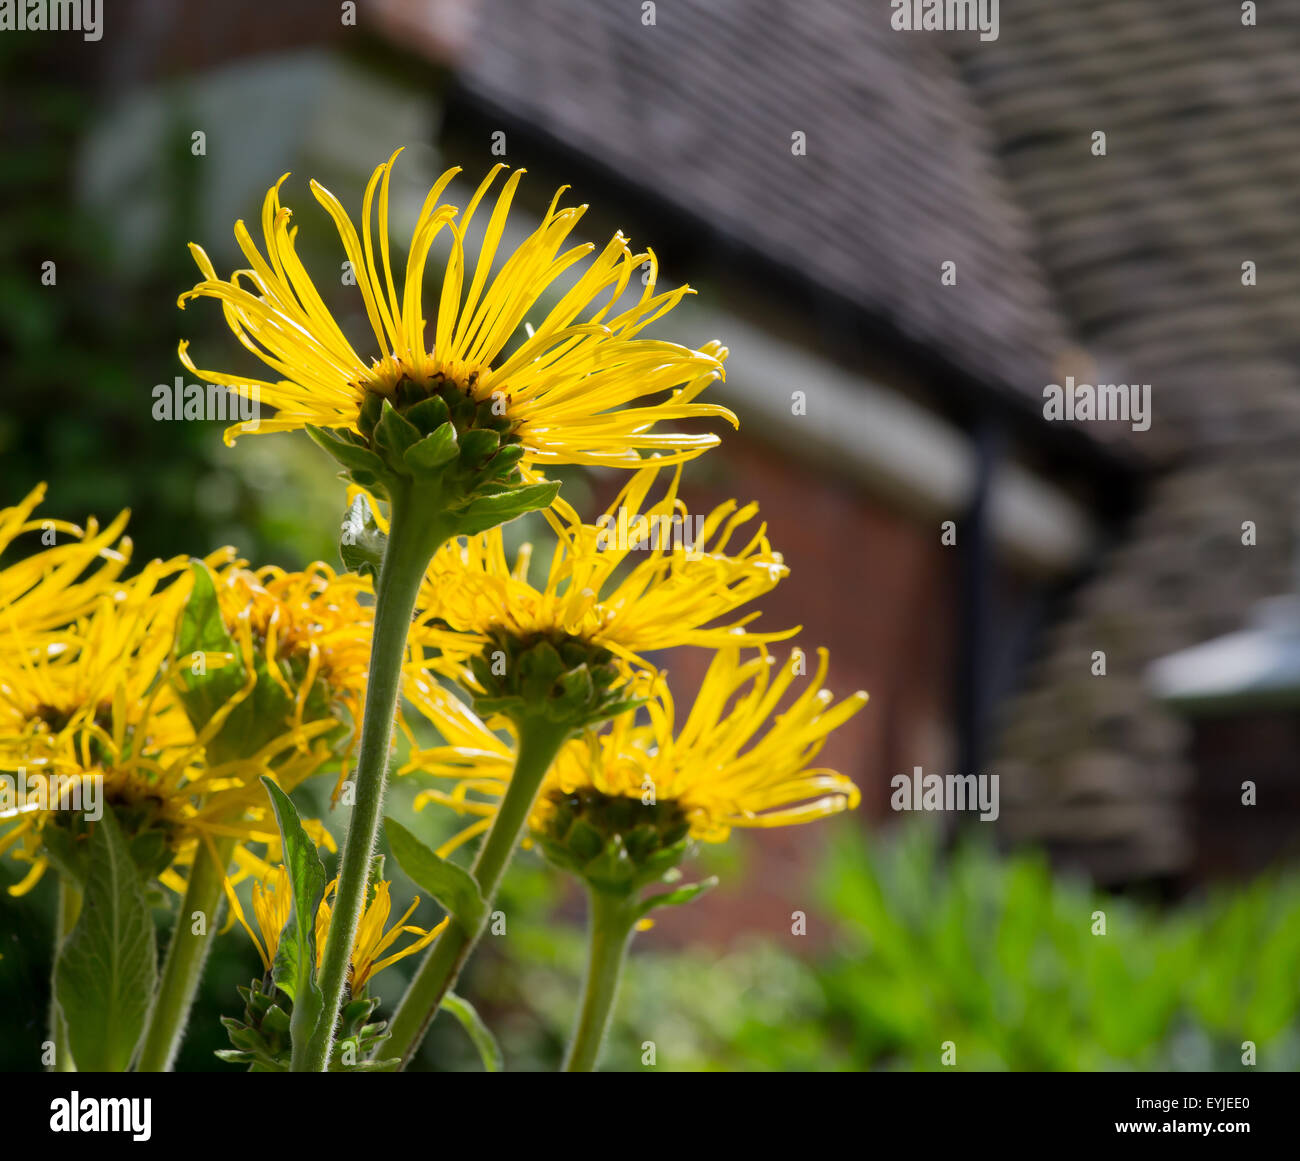 Gelbe Oxeye - Telekia Speciosa Blumen im Cottage-Garten, helle Sonnenlicht Stockfoto